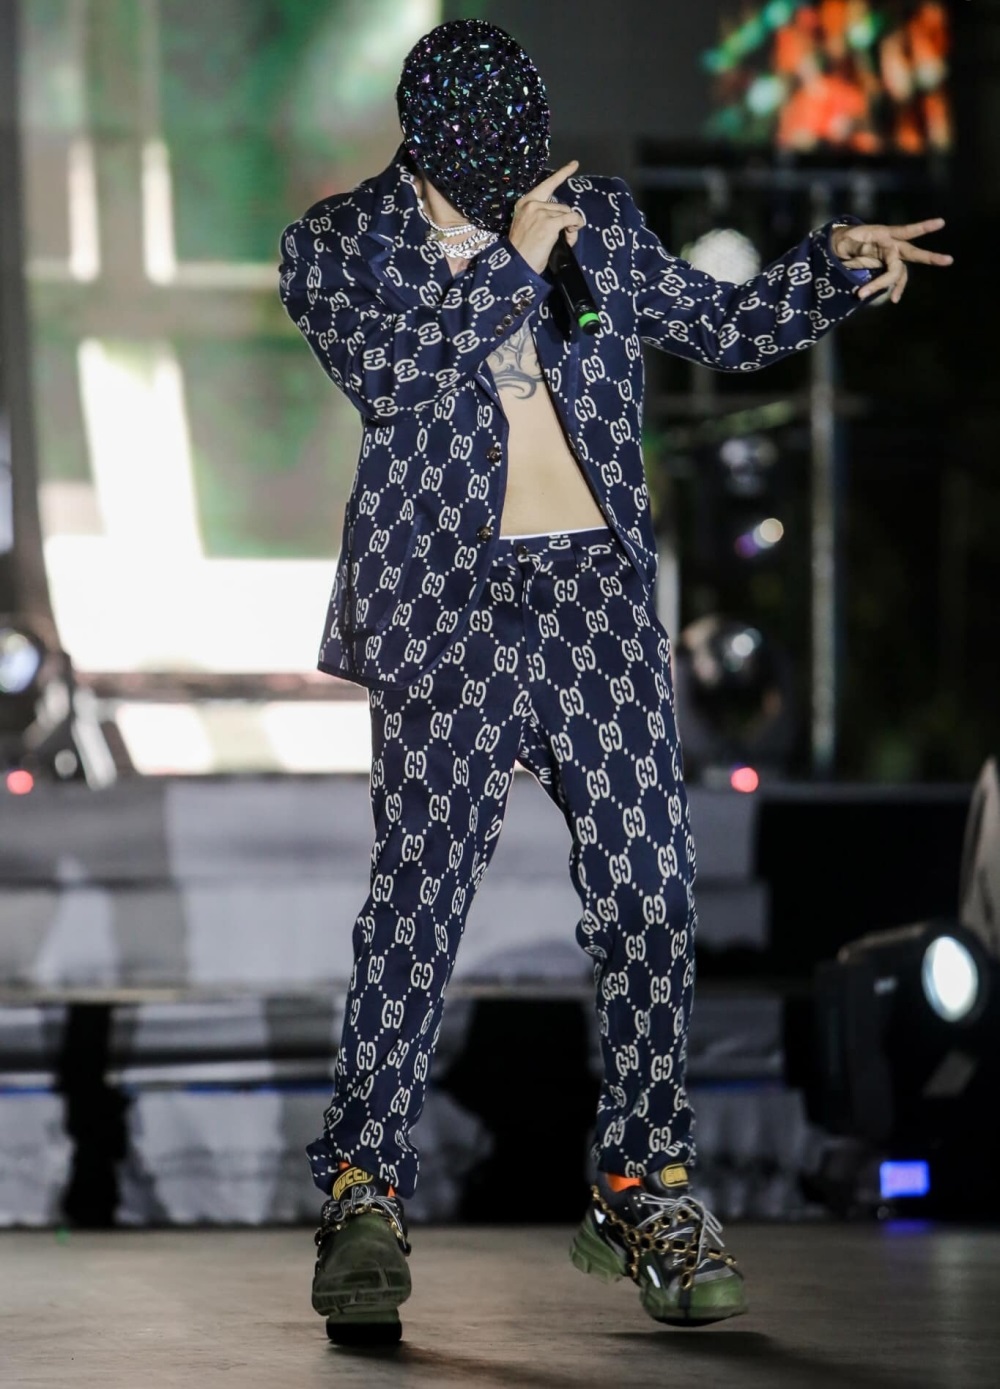 Binz diện bộ suit Gucci Jacquard để ngực trần, kết hợp với giày sneaker Gucci Flashtrek chunky. Chiếc mặt nạ tông màu xanh lấp lánh khá lạ mắt.